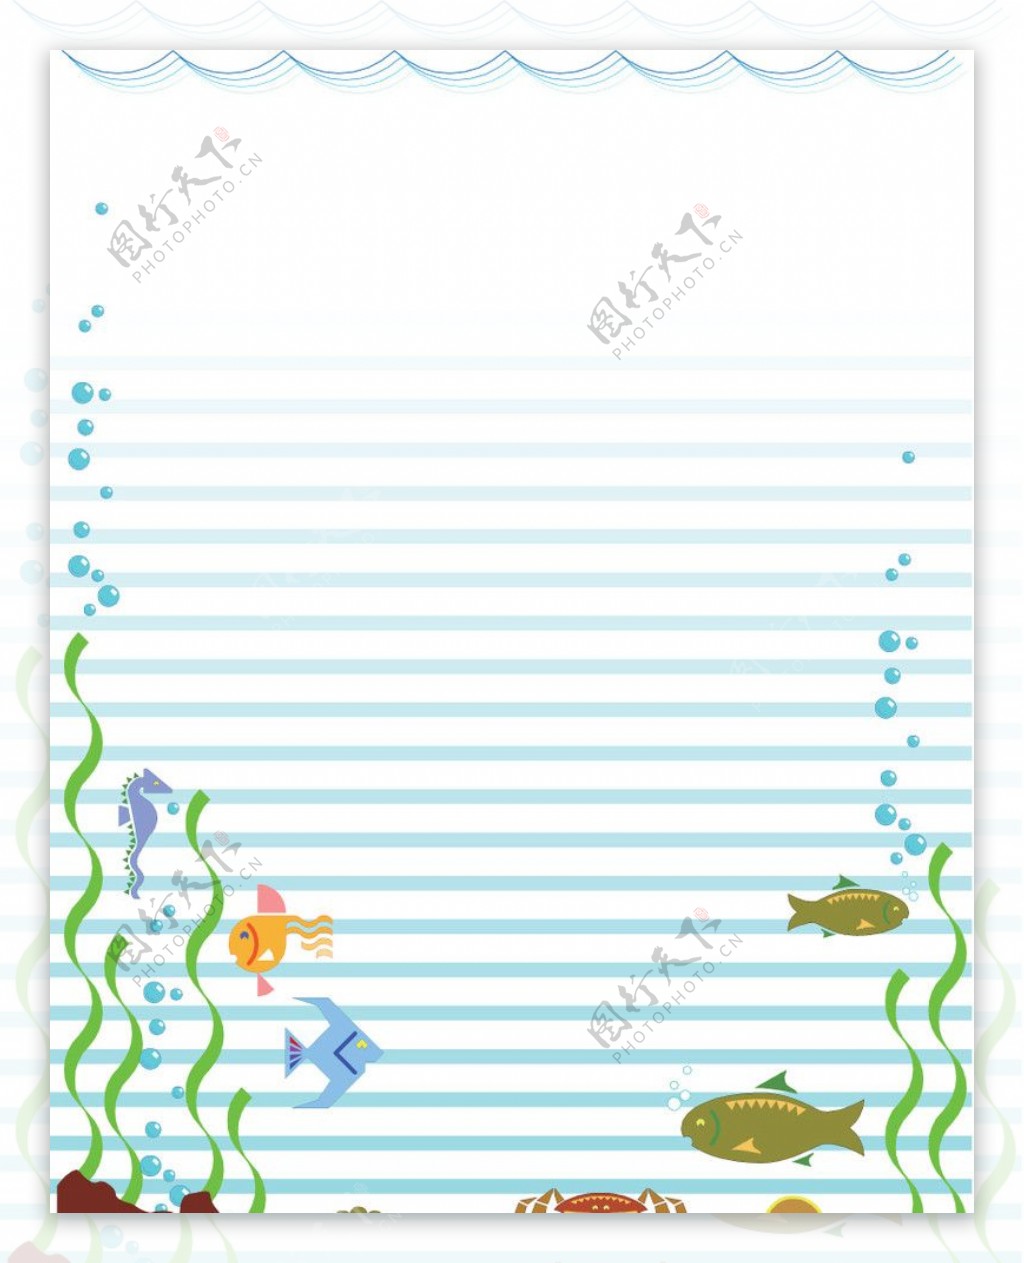 海底鱼螃蟹海马乌龟蜗牛海草图片